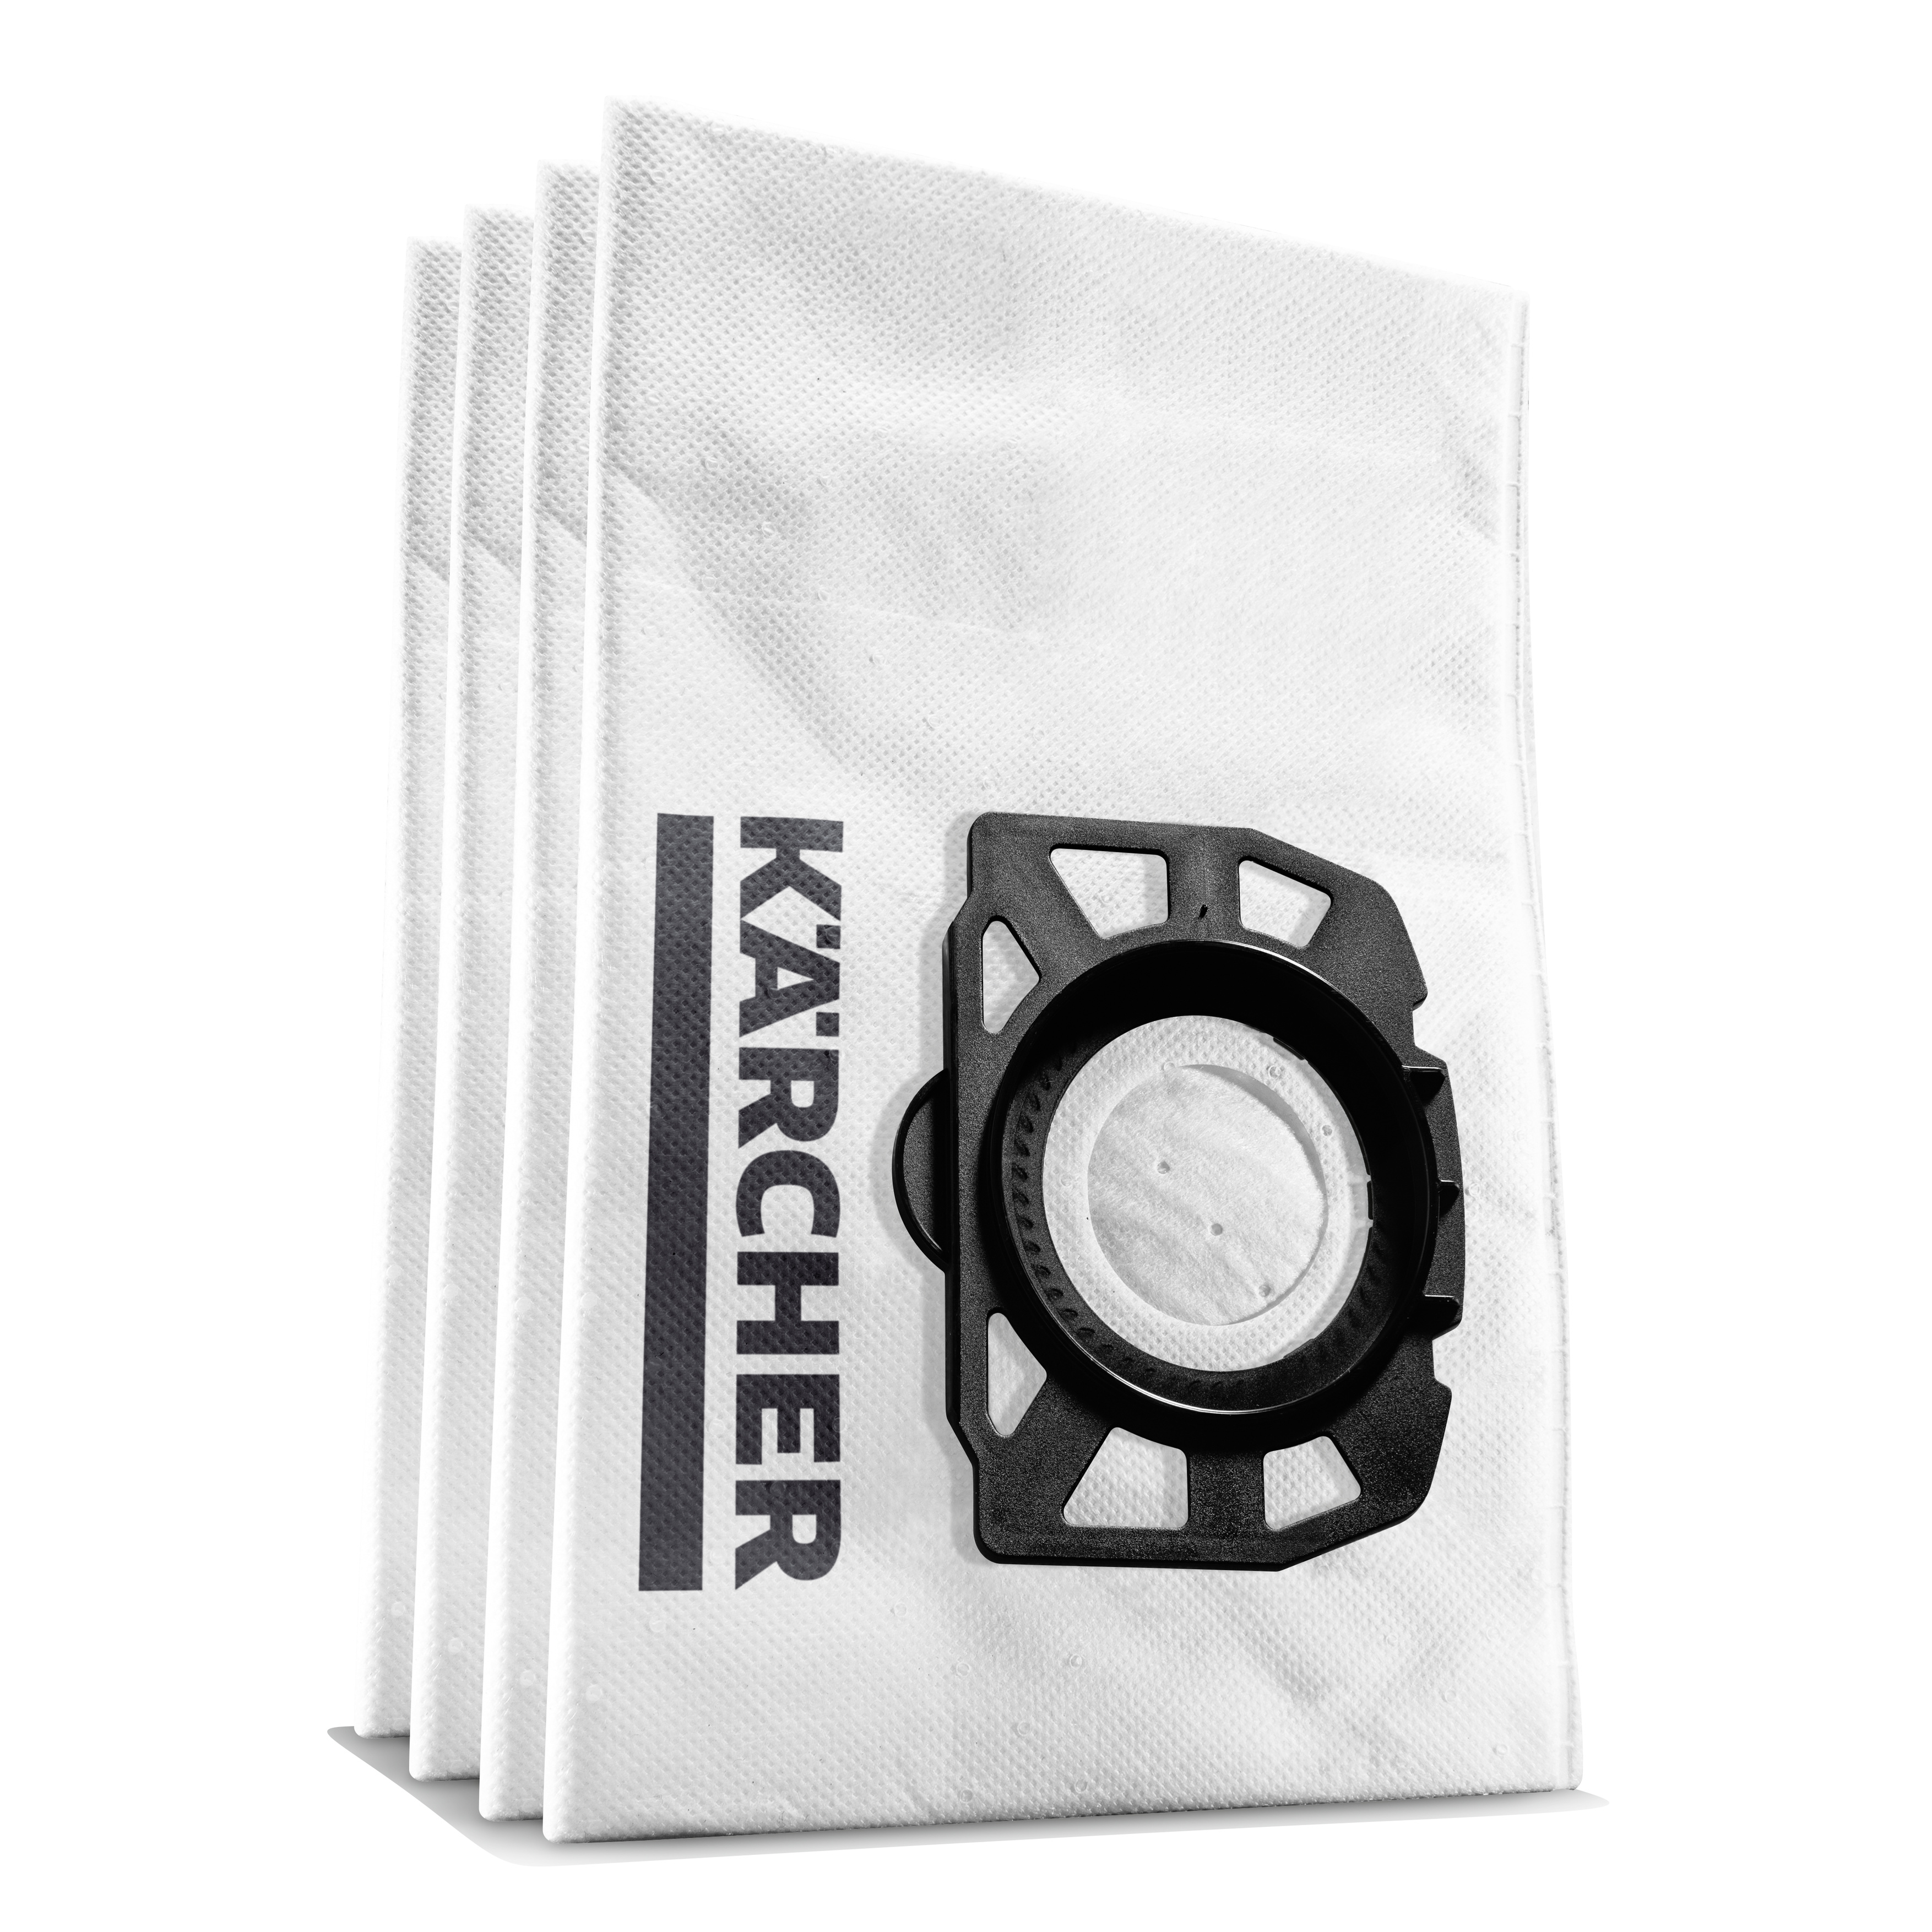 Σακούλες φίλτρου fleece WD 3 & SE 4001 4 τμχ. Karcher - 2